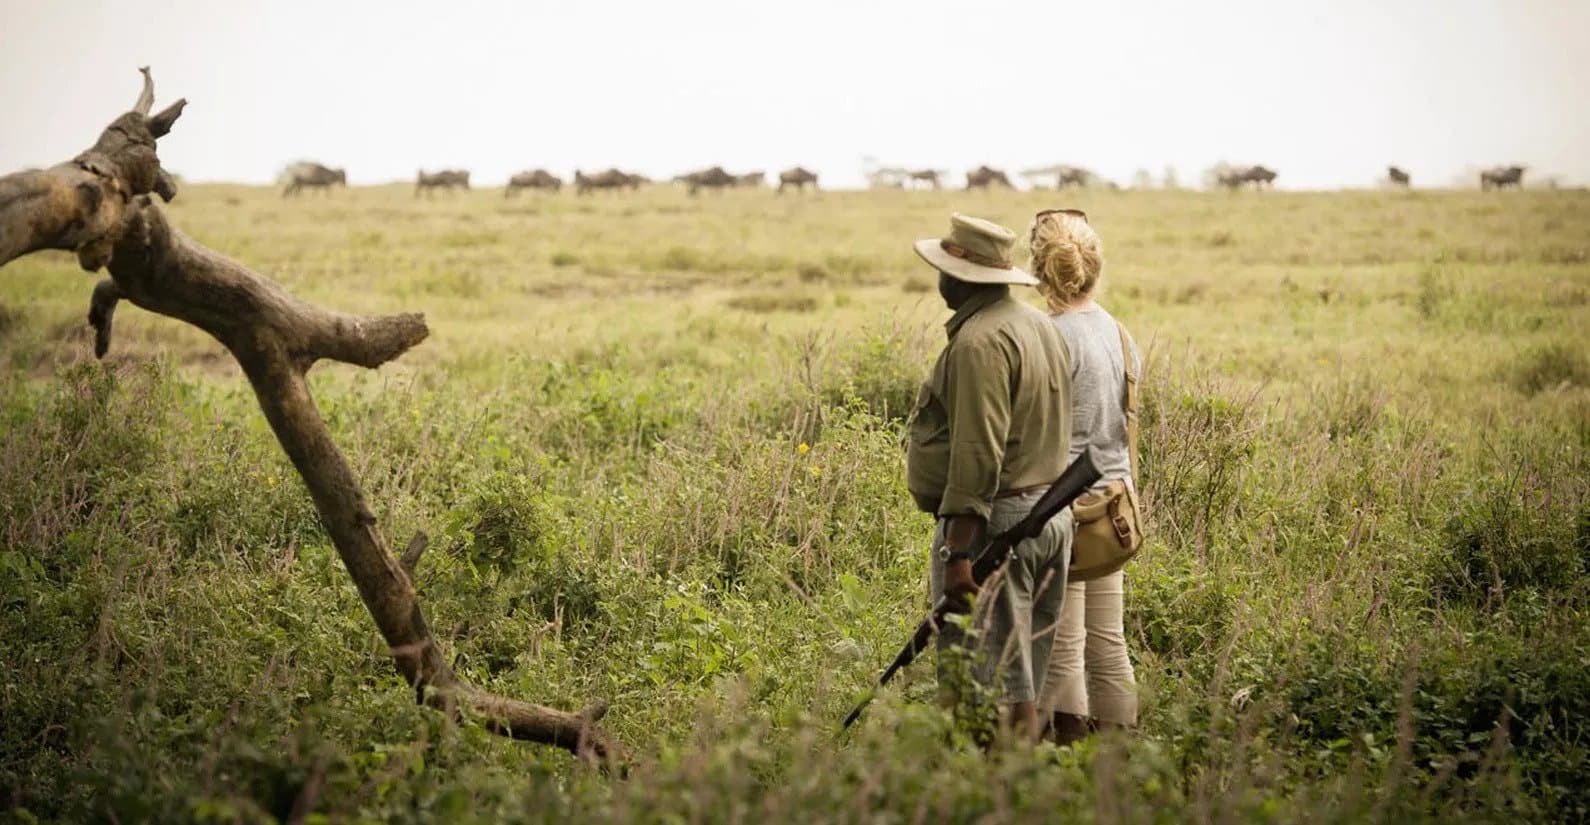 walking safari in tanzania